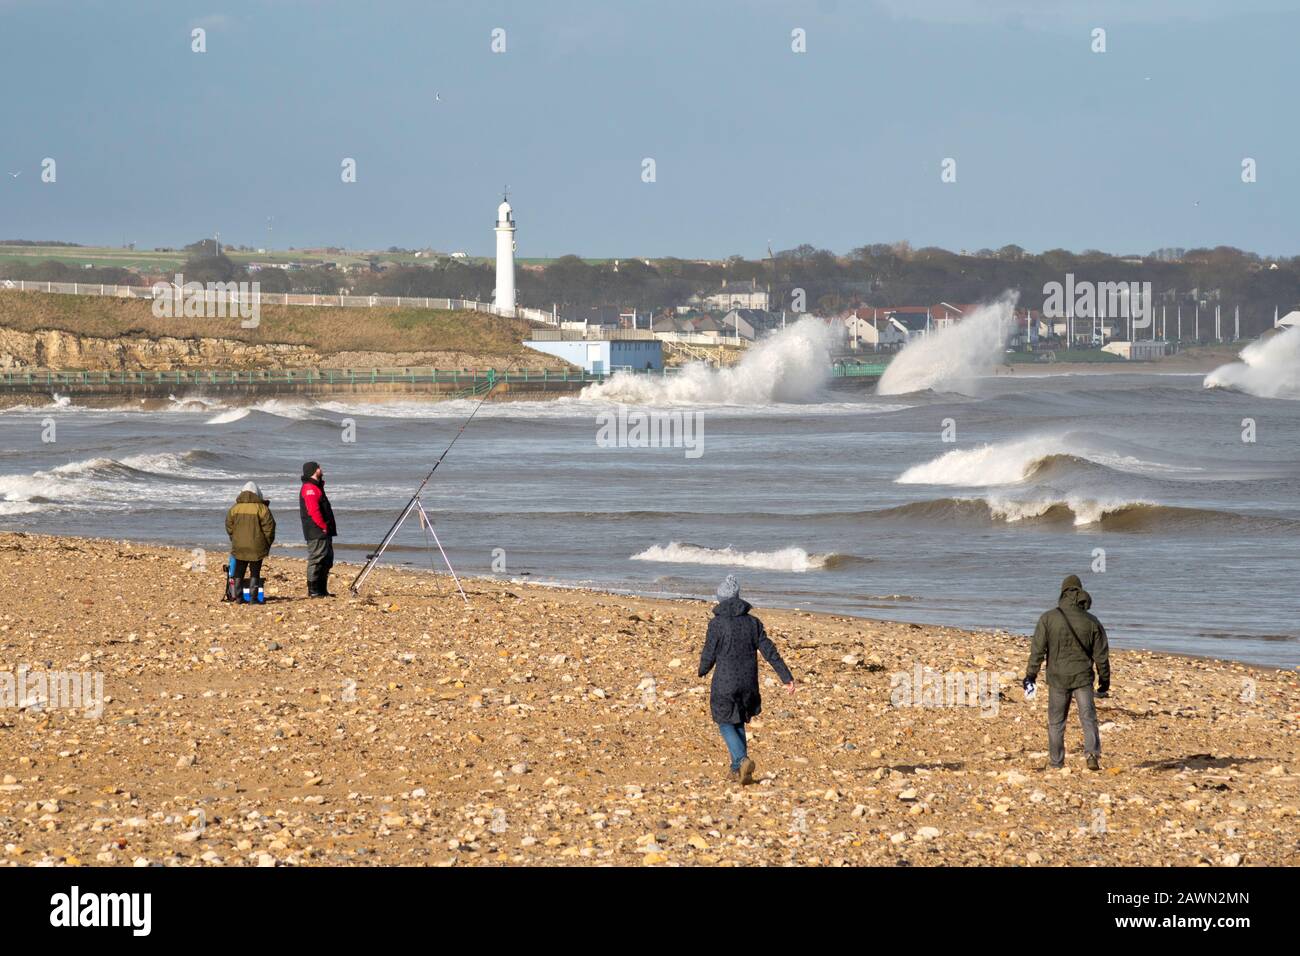 Menschen, die am Strand von Roker angeln und mit großen Wellen laufen, die während des Storm Ciara, Sunderland, England, Großbritannien 09. Februar 2020 brechen Stockfoto